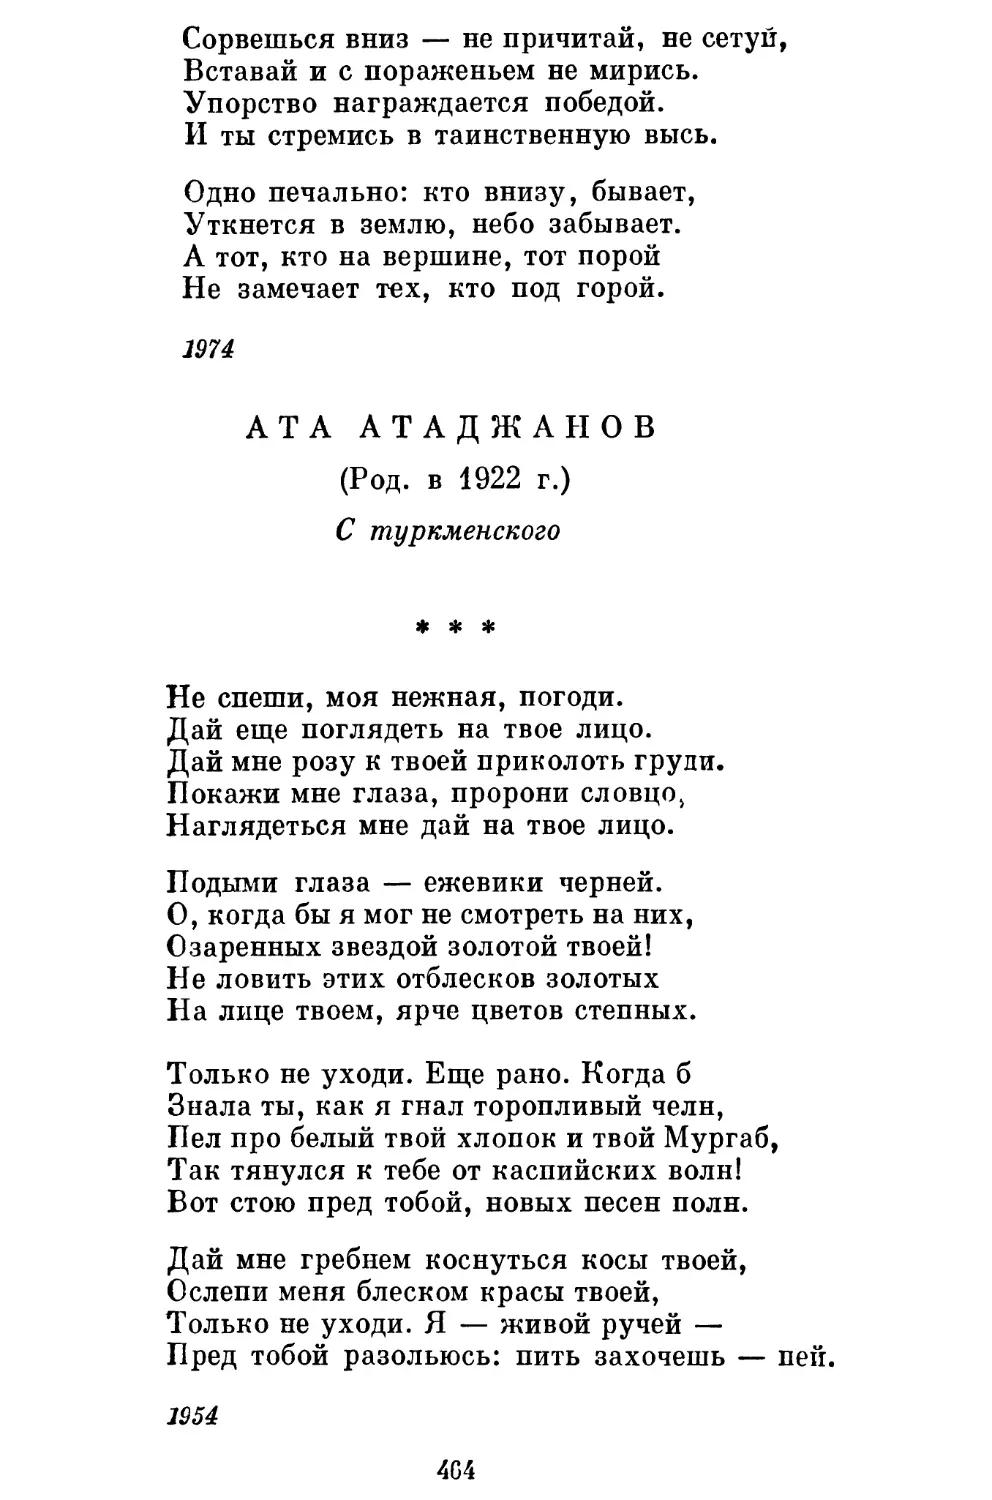 Ата Атаджанов